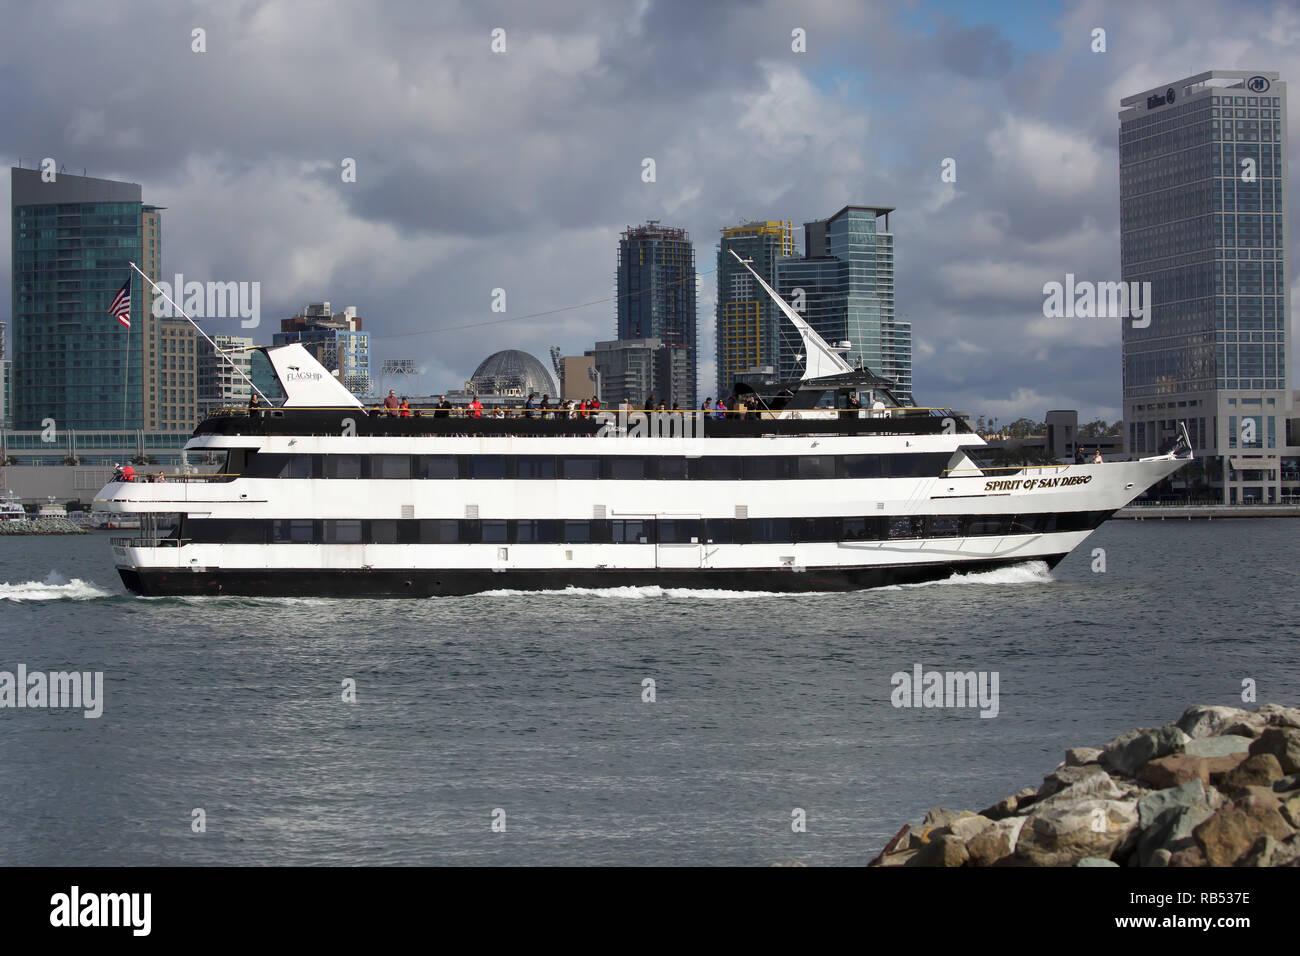 https://c8.alamy.com/comp/RB537E/spirit-of-san-diego-harbour-cruise-boat-passes-coronado-RB537E.jpg